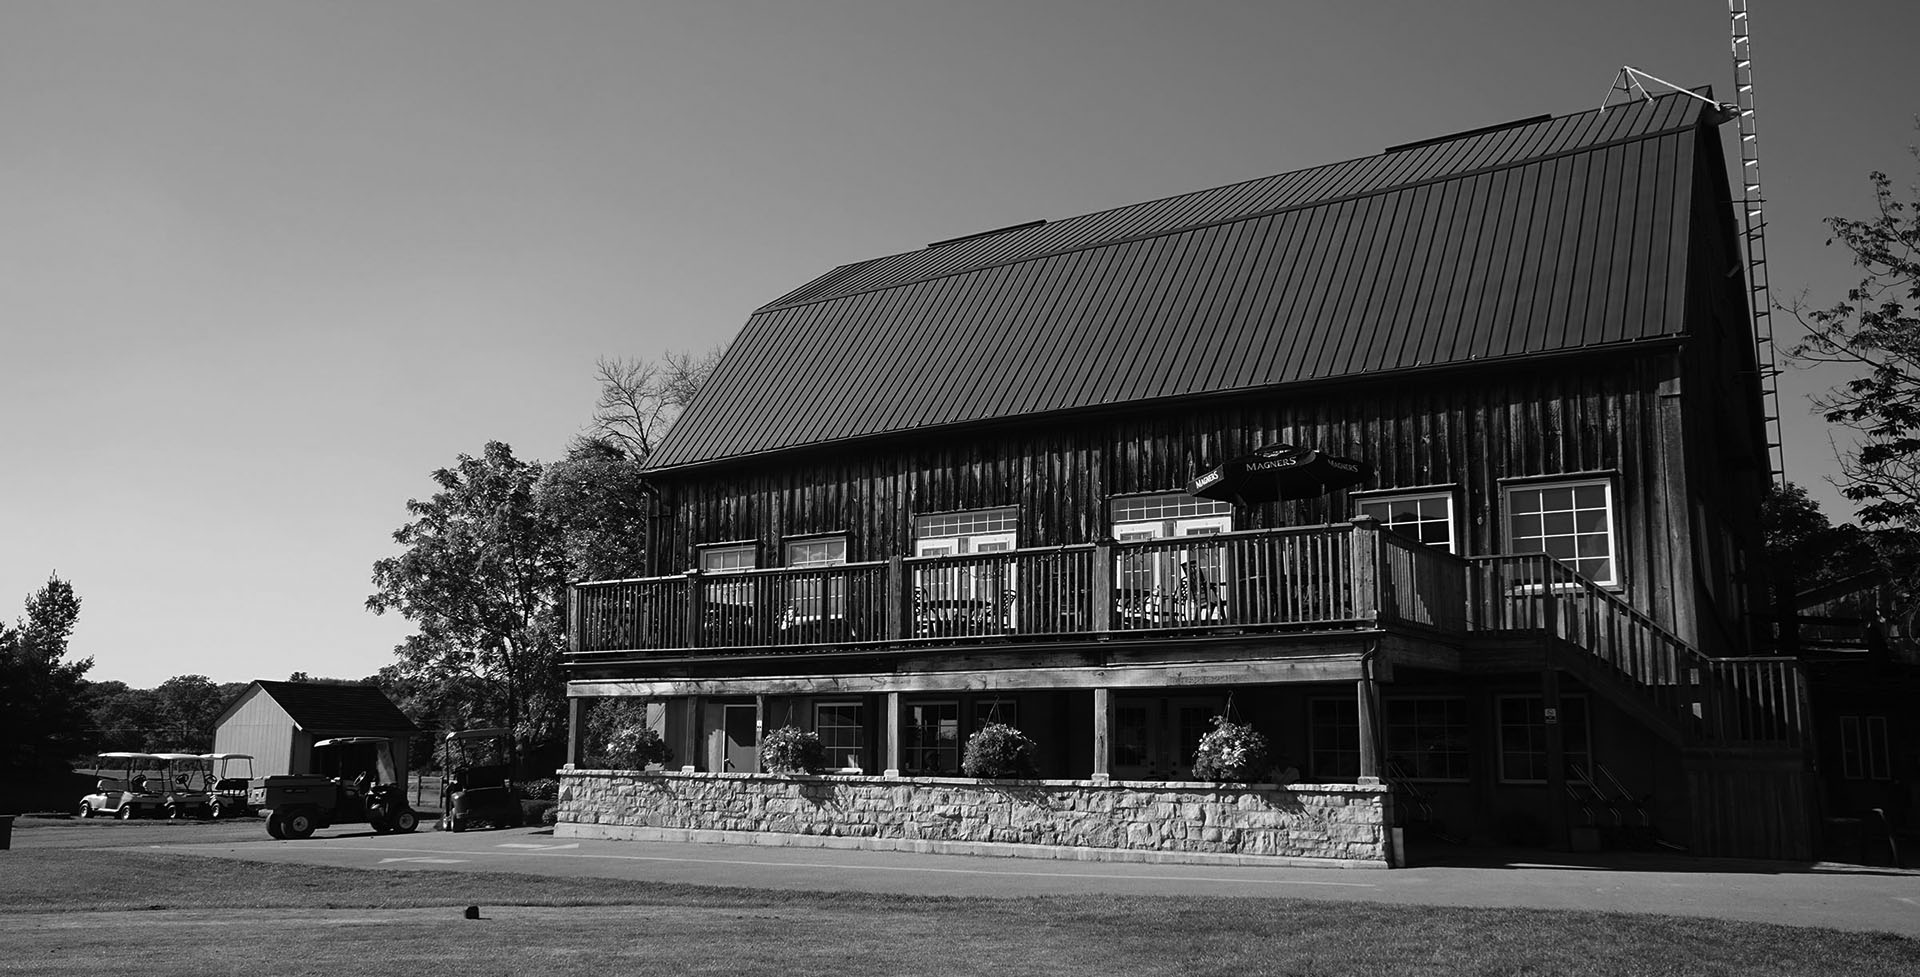 Barn at the Knollwood Golf Club